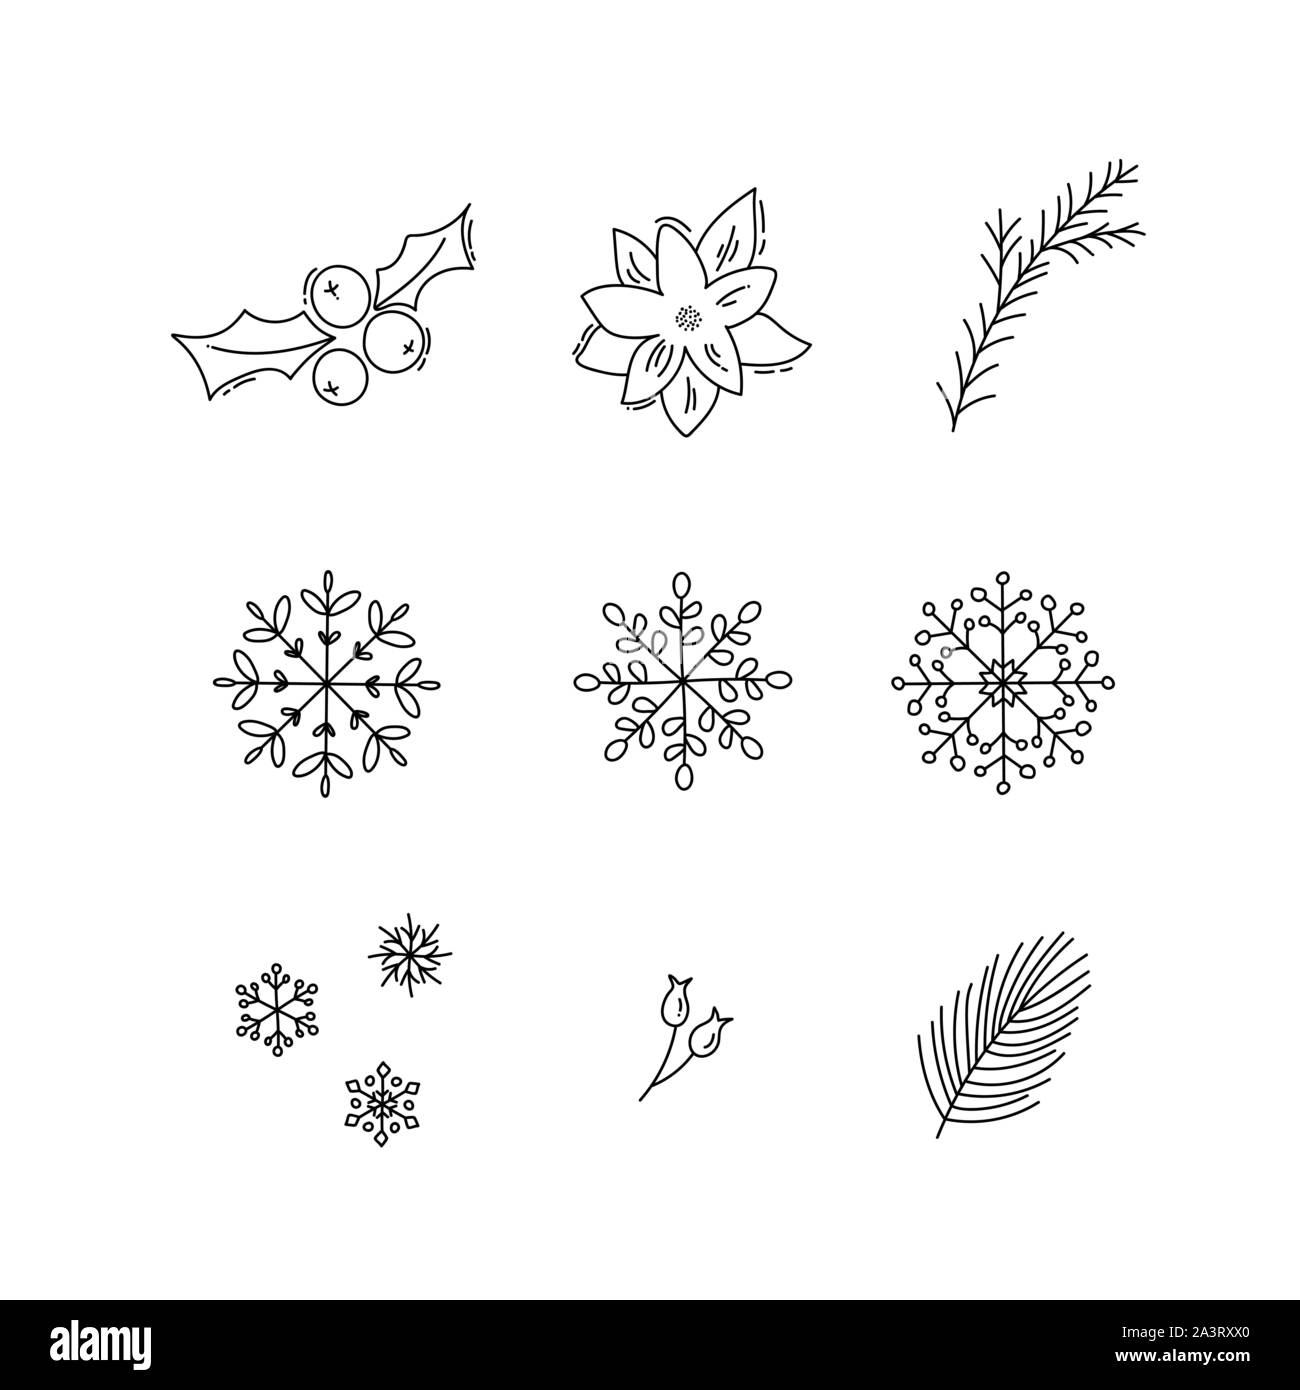 Natale vacanze monolinea decorazione set di icone con il vischio, prua, i fiocchi di neve. Gli elementi isolati illustrazione vettoriale Illustrazione Vettoriale